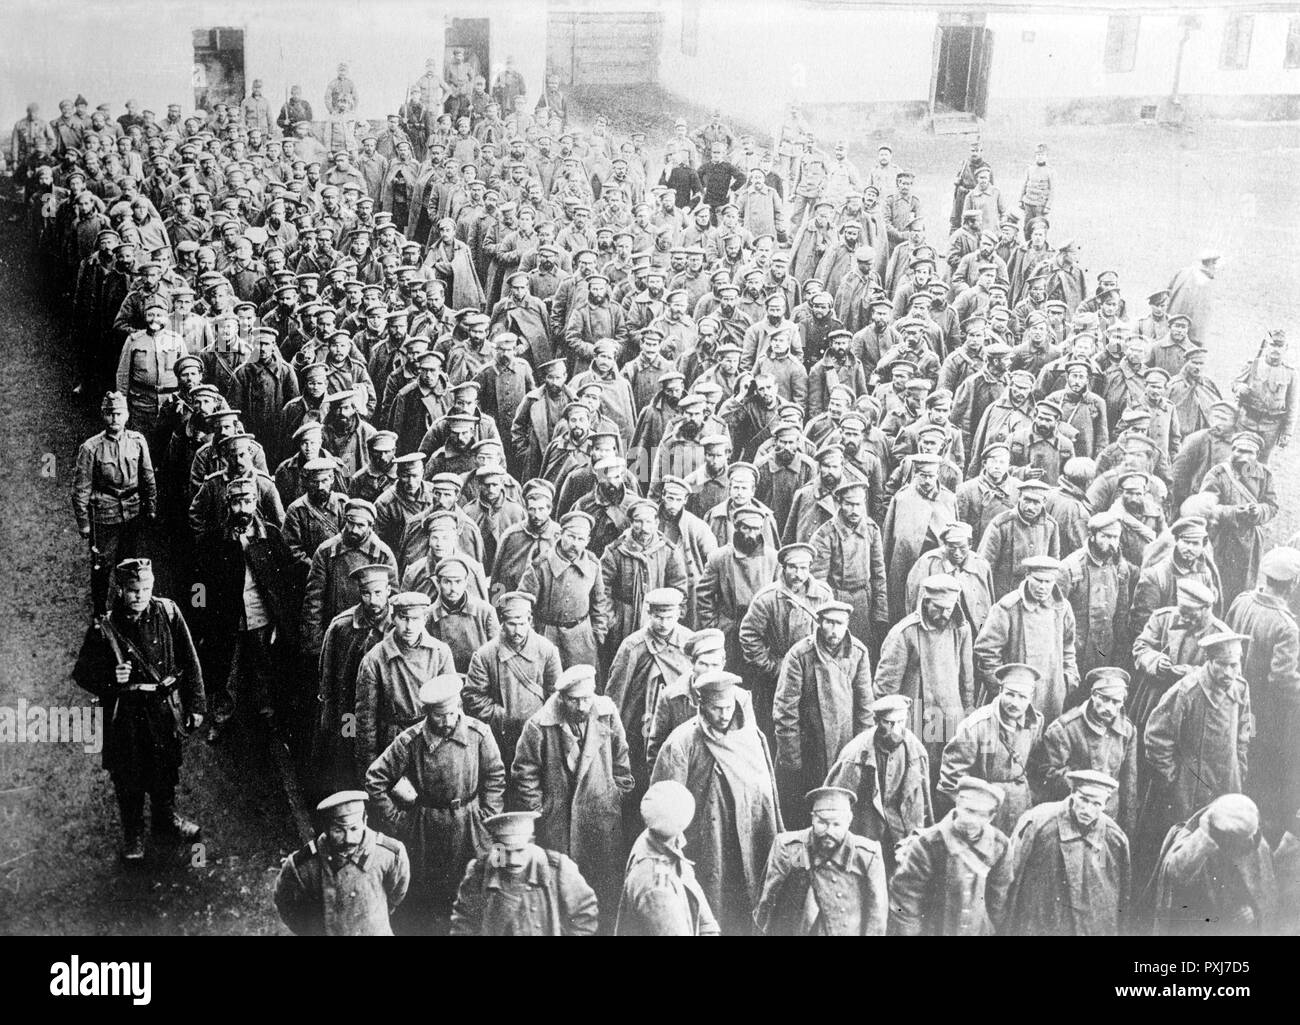 Russische Gefangene in Przemysl, um 1914 - 1915 russische Soldaten gefangen genommen von der österreichisch-ungarischen Armee in Przemysl Festung Przemysl, Österreich-Ungarn, jetzt in Polen während des Zweiten Weltkriegs Stockfoto